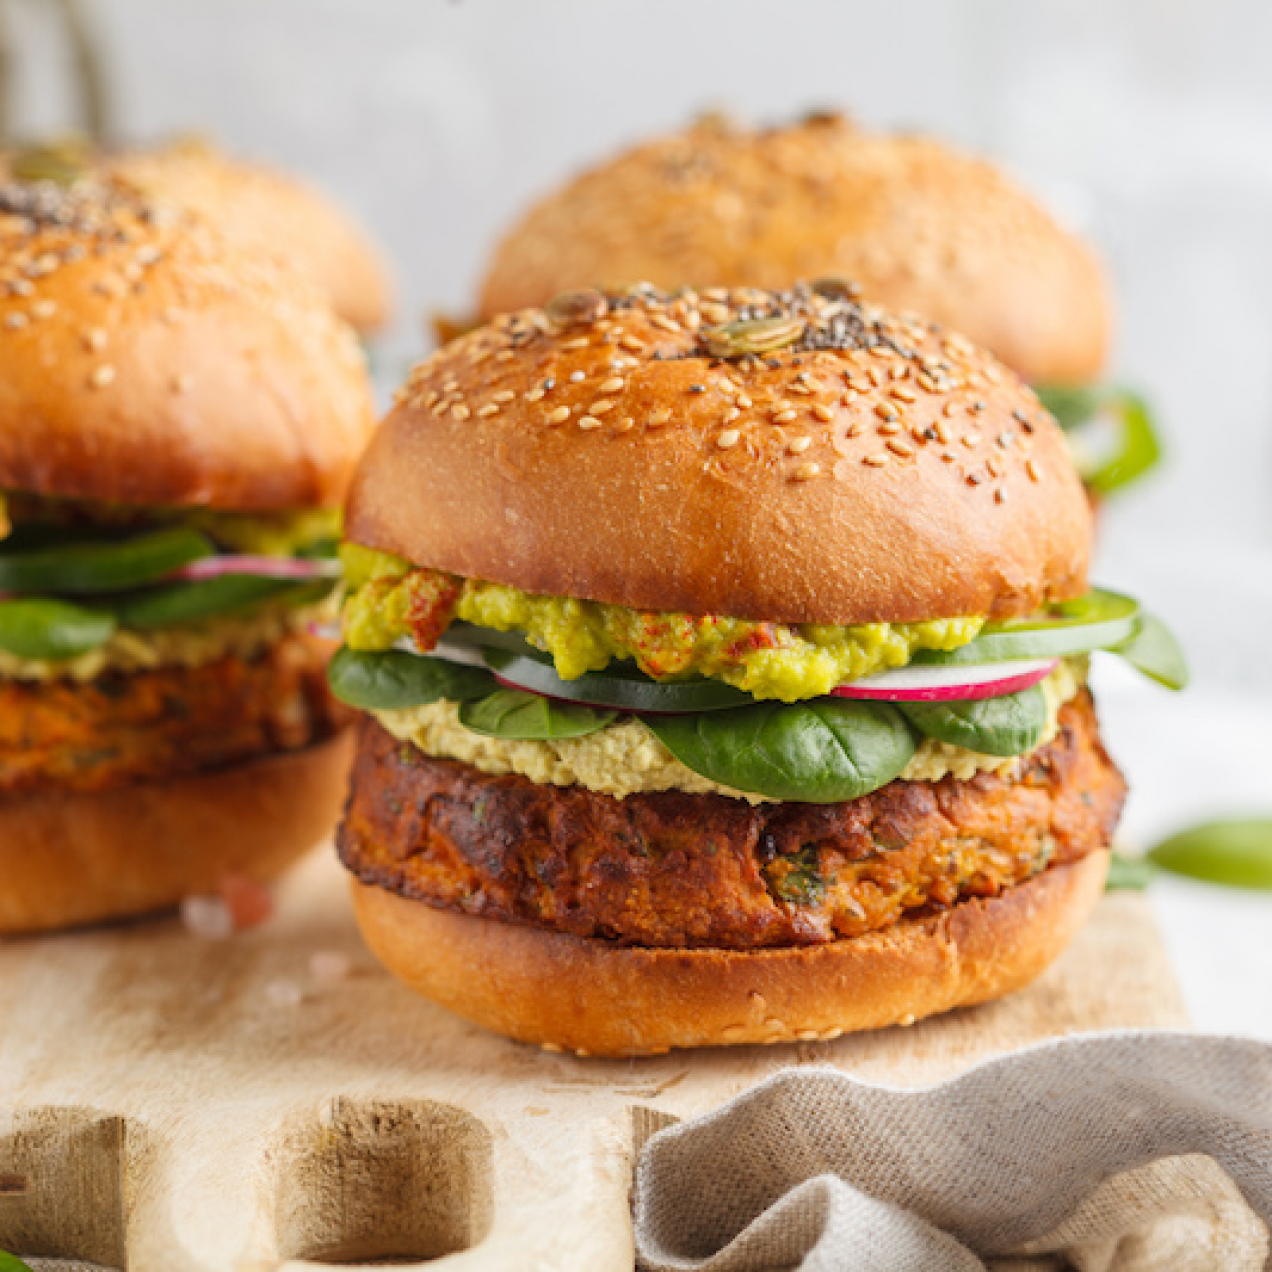 Pains à burger végétaliens – Les bons ingrédients font la différence